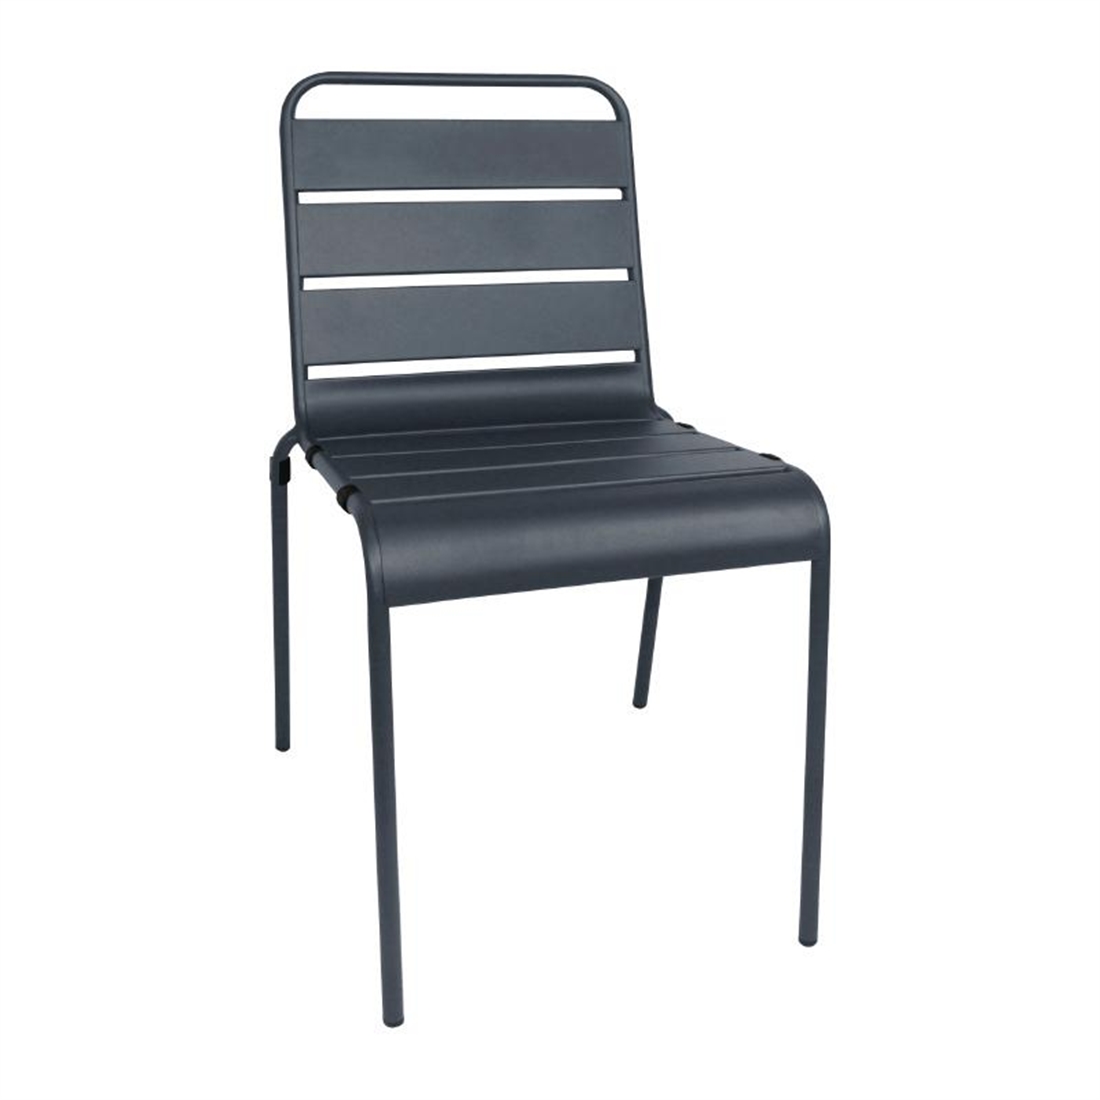 Bolero Grey Slatted Steel Sidechair (Pack of 4)